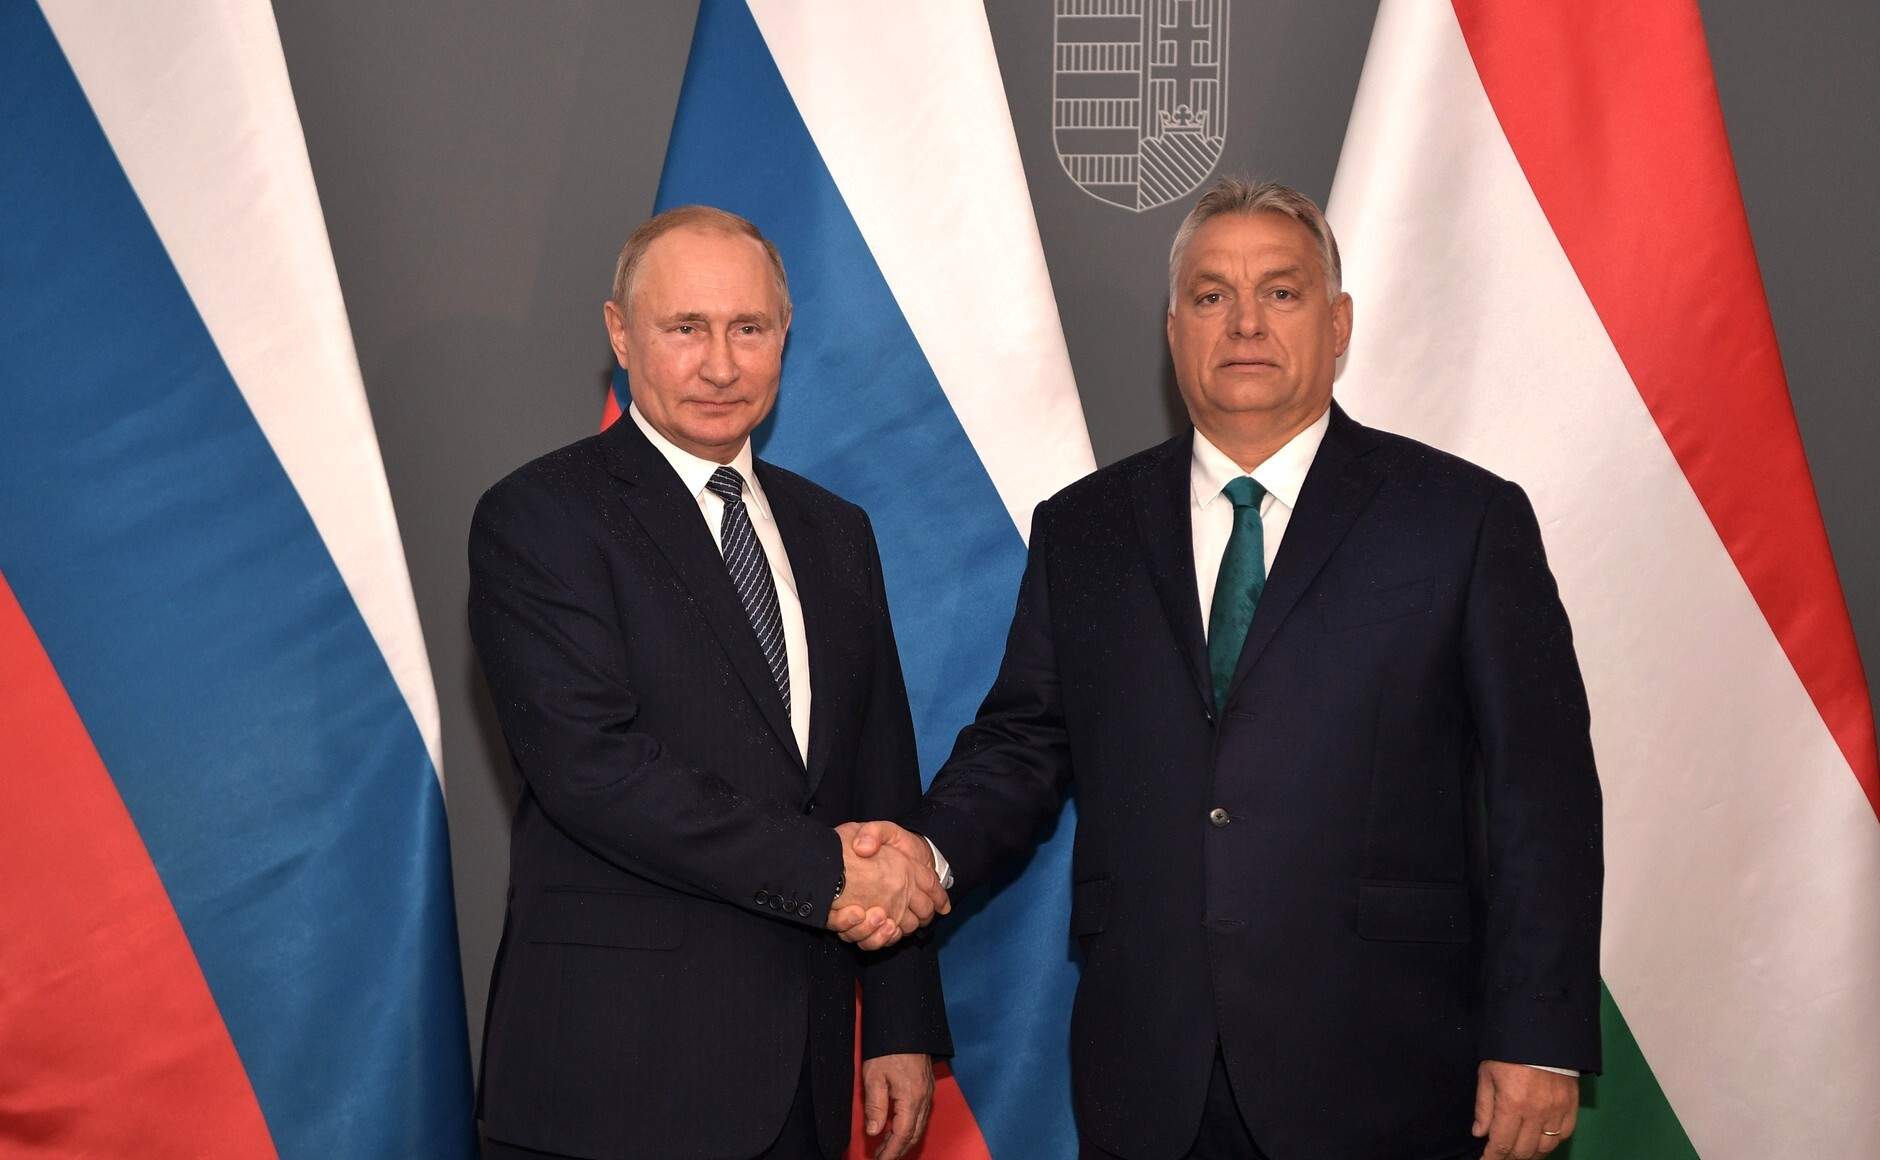 Viktor Orbán se reúne con Vladímir Putin en Moscú y levanta polvareda en Bruselas